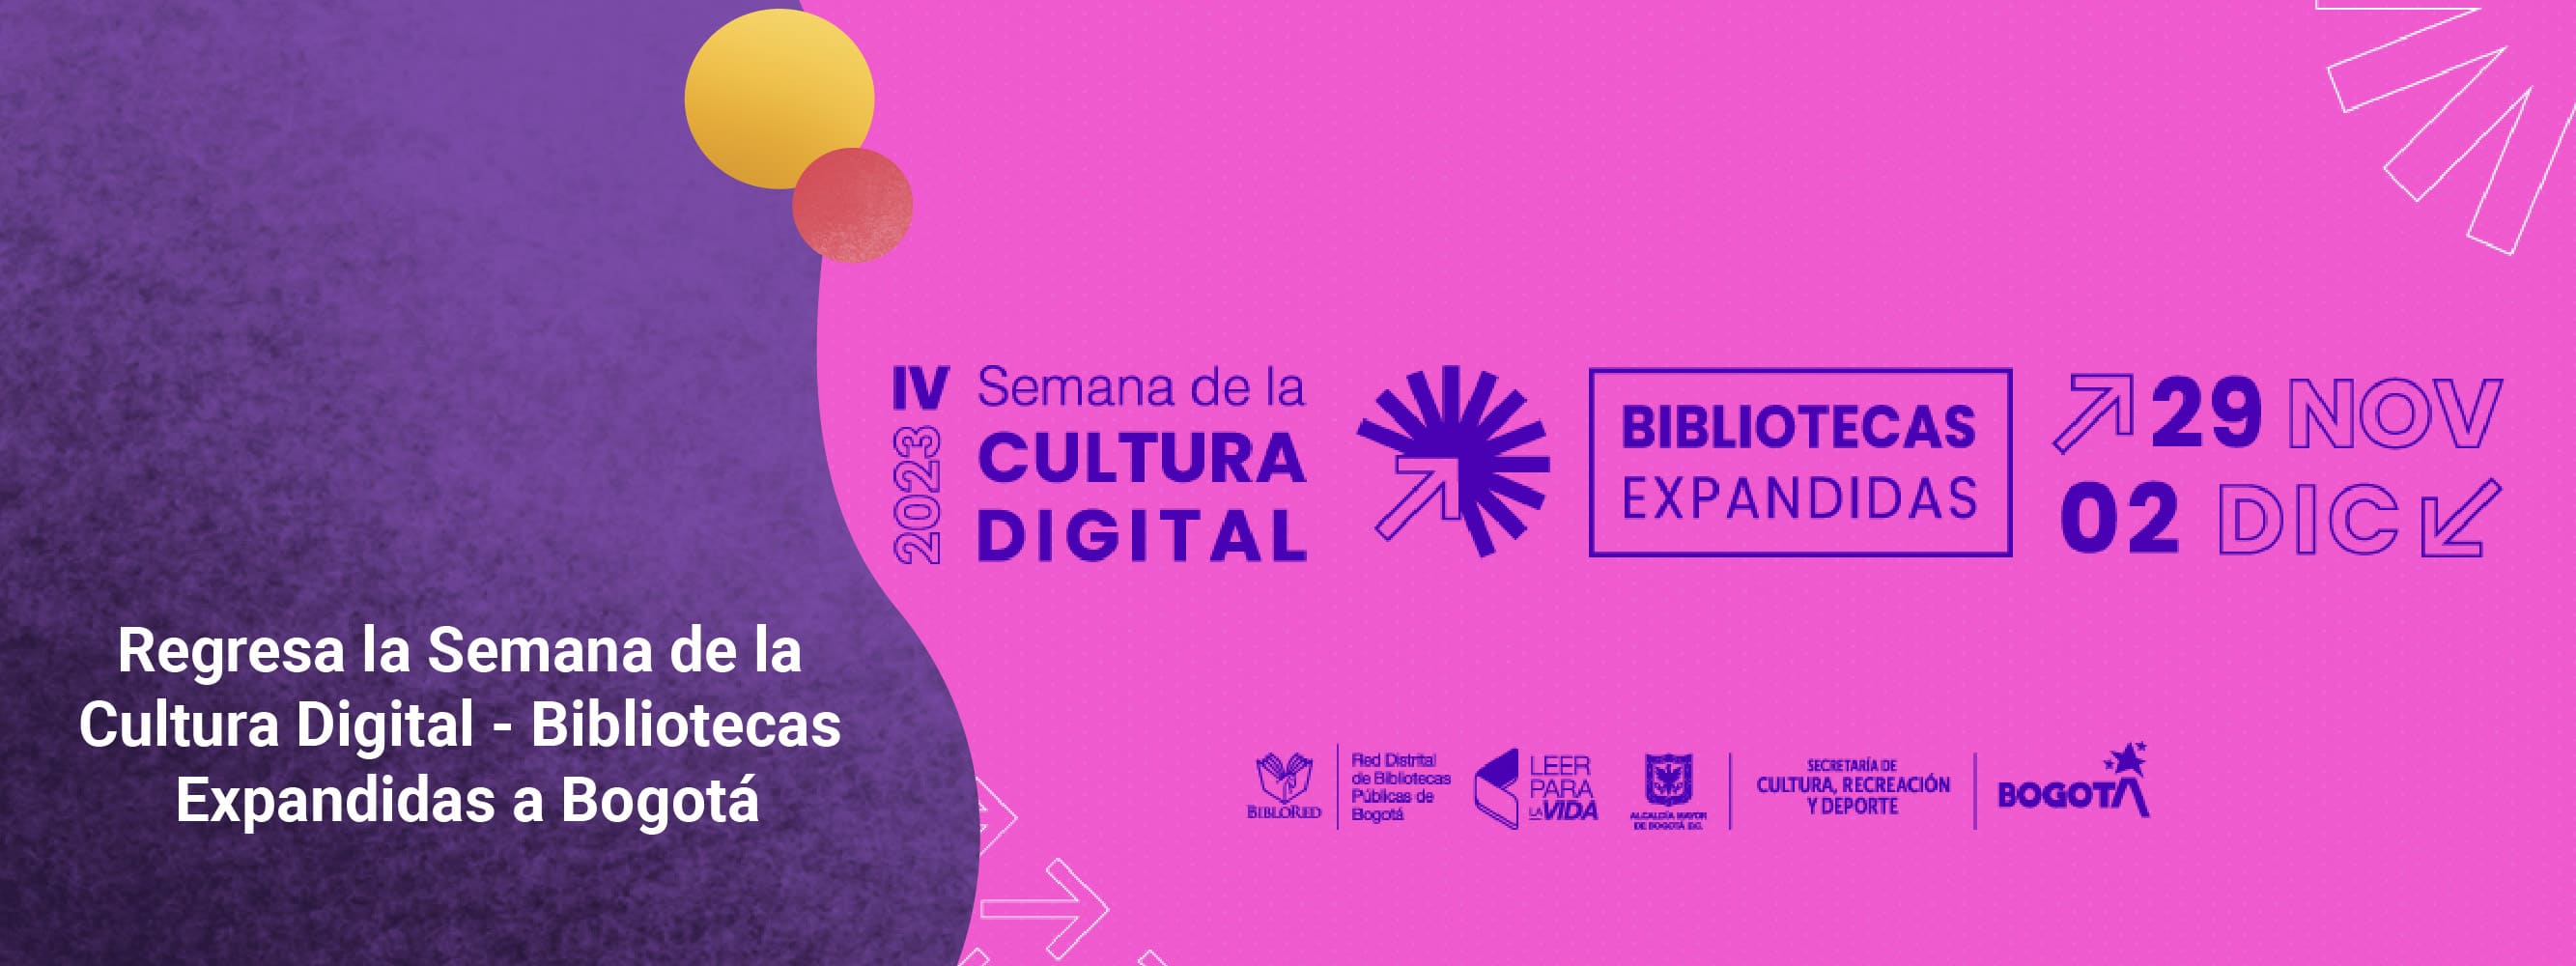 Cuarta edición de la Semana de la Cultura Digital - Bibliotecas expandidas